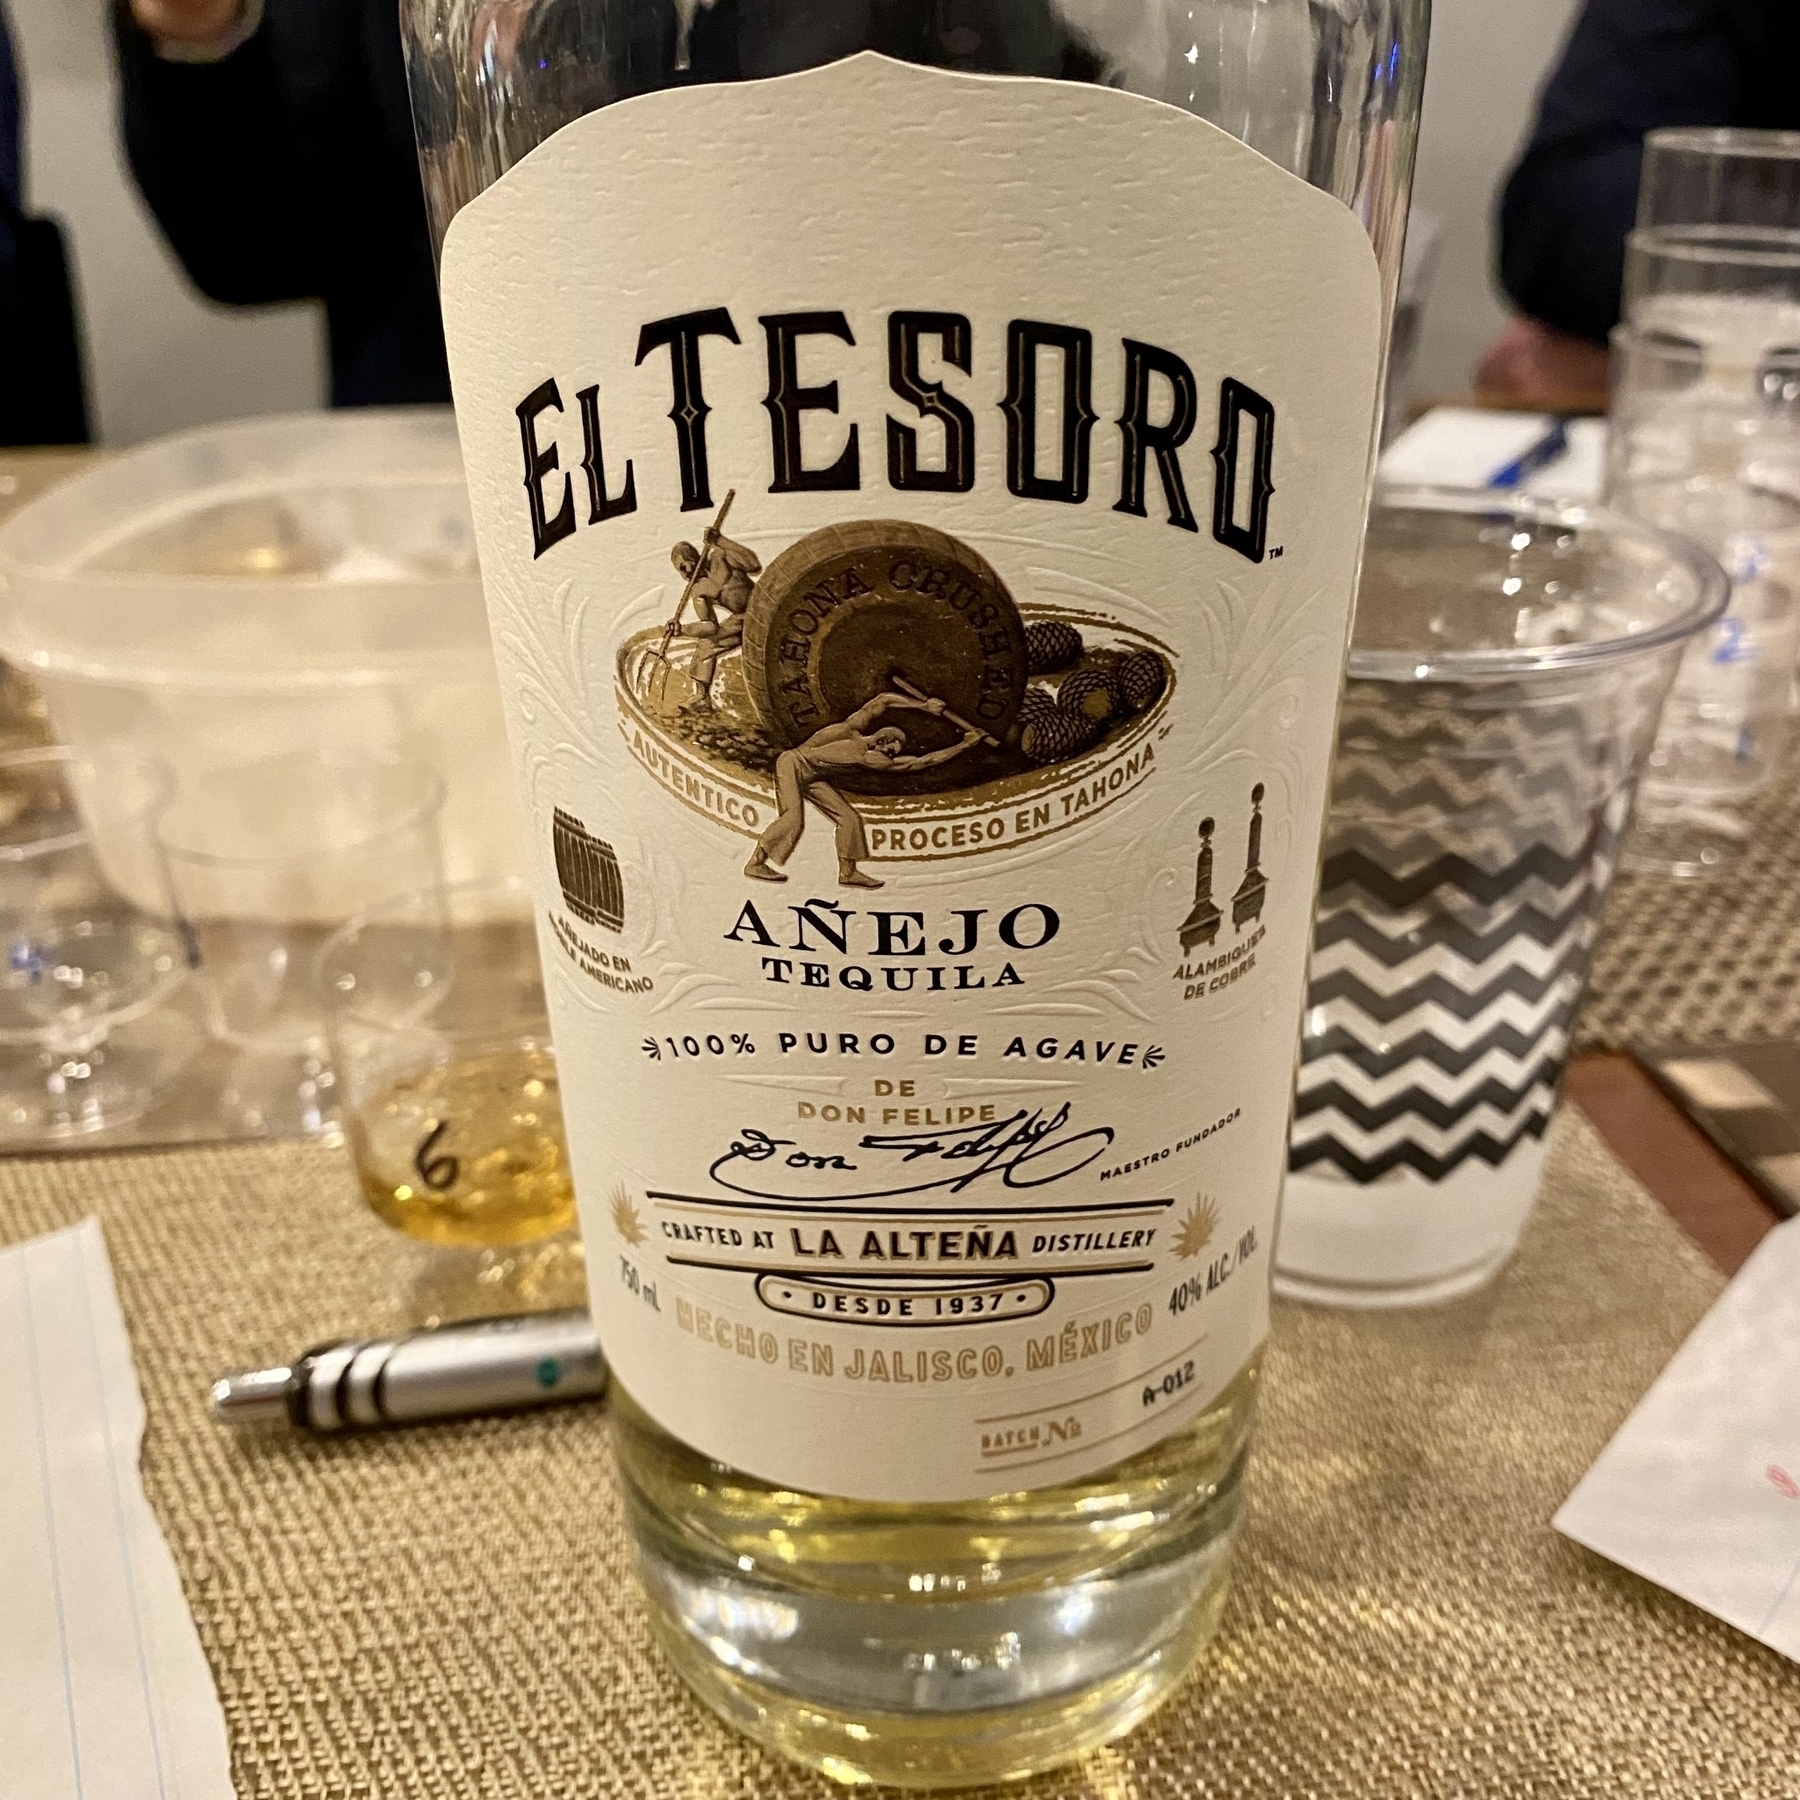 A bottle of El Tesoro